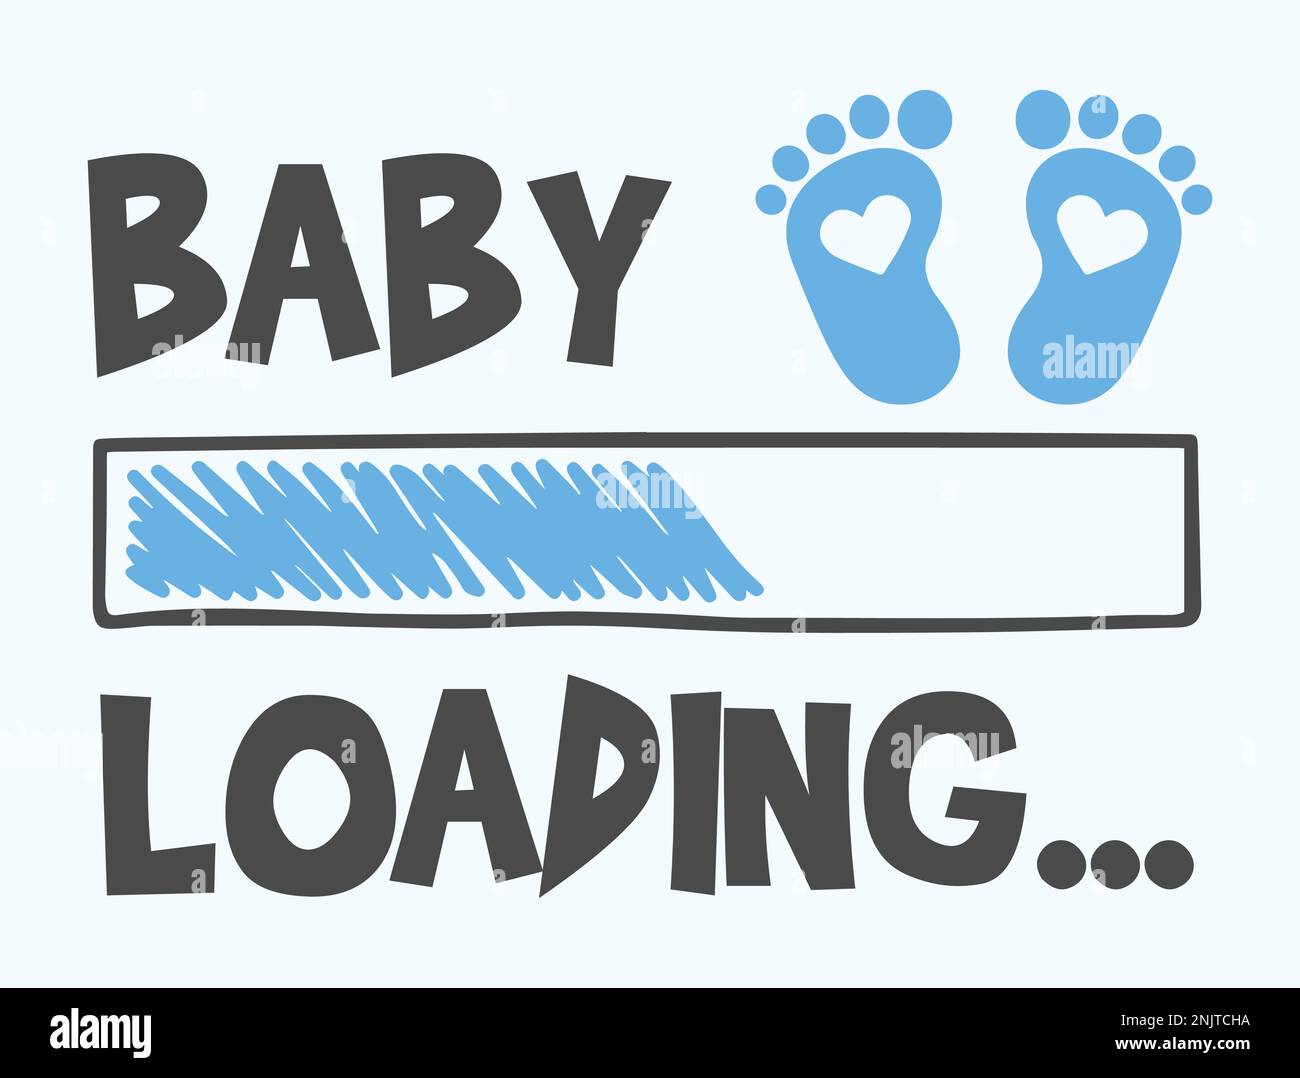 Baby Boy Lädt. Beschriftung mit Download-Leiste und Baby Footprint. Vektordarstellung für T-Shirt-Design, Poster, Karte, Babyparty-Dekoration. Stock Vektor